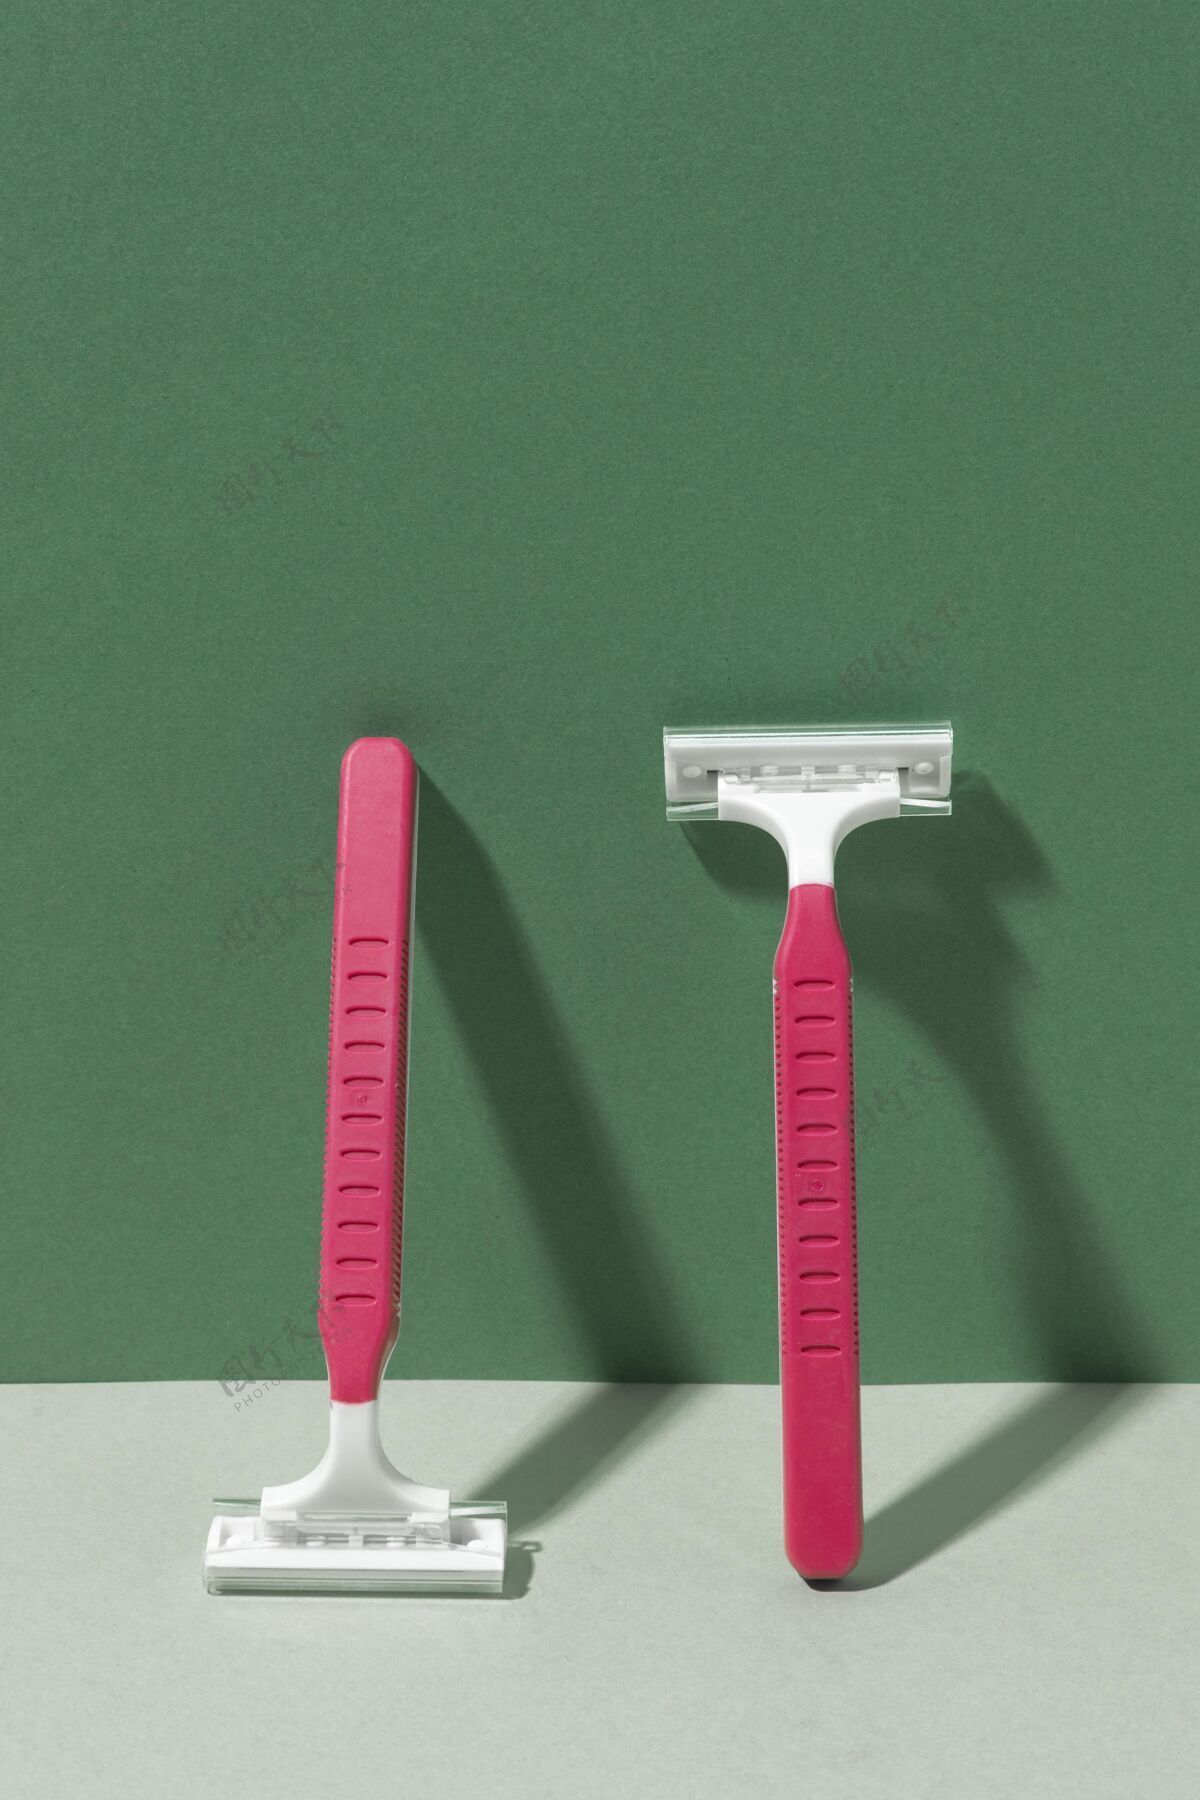 塑料靠在墙上的粉色剃须刀片一次性污染产品